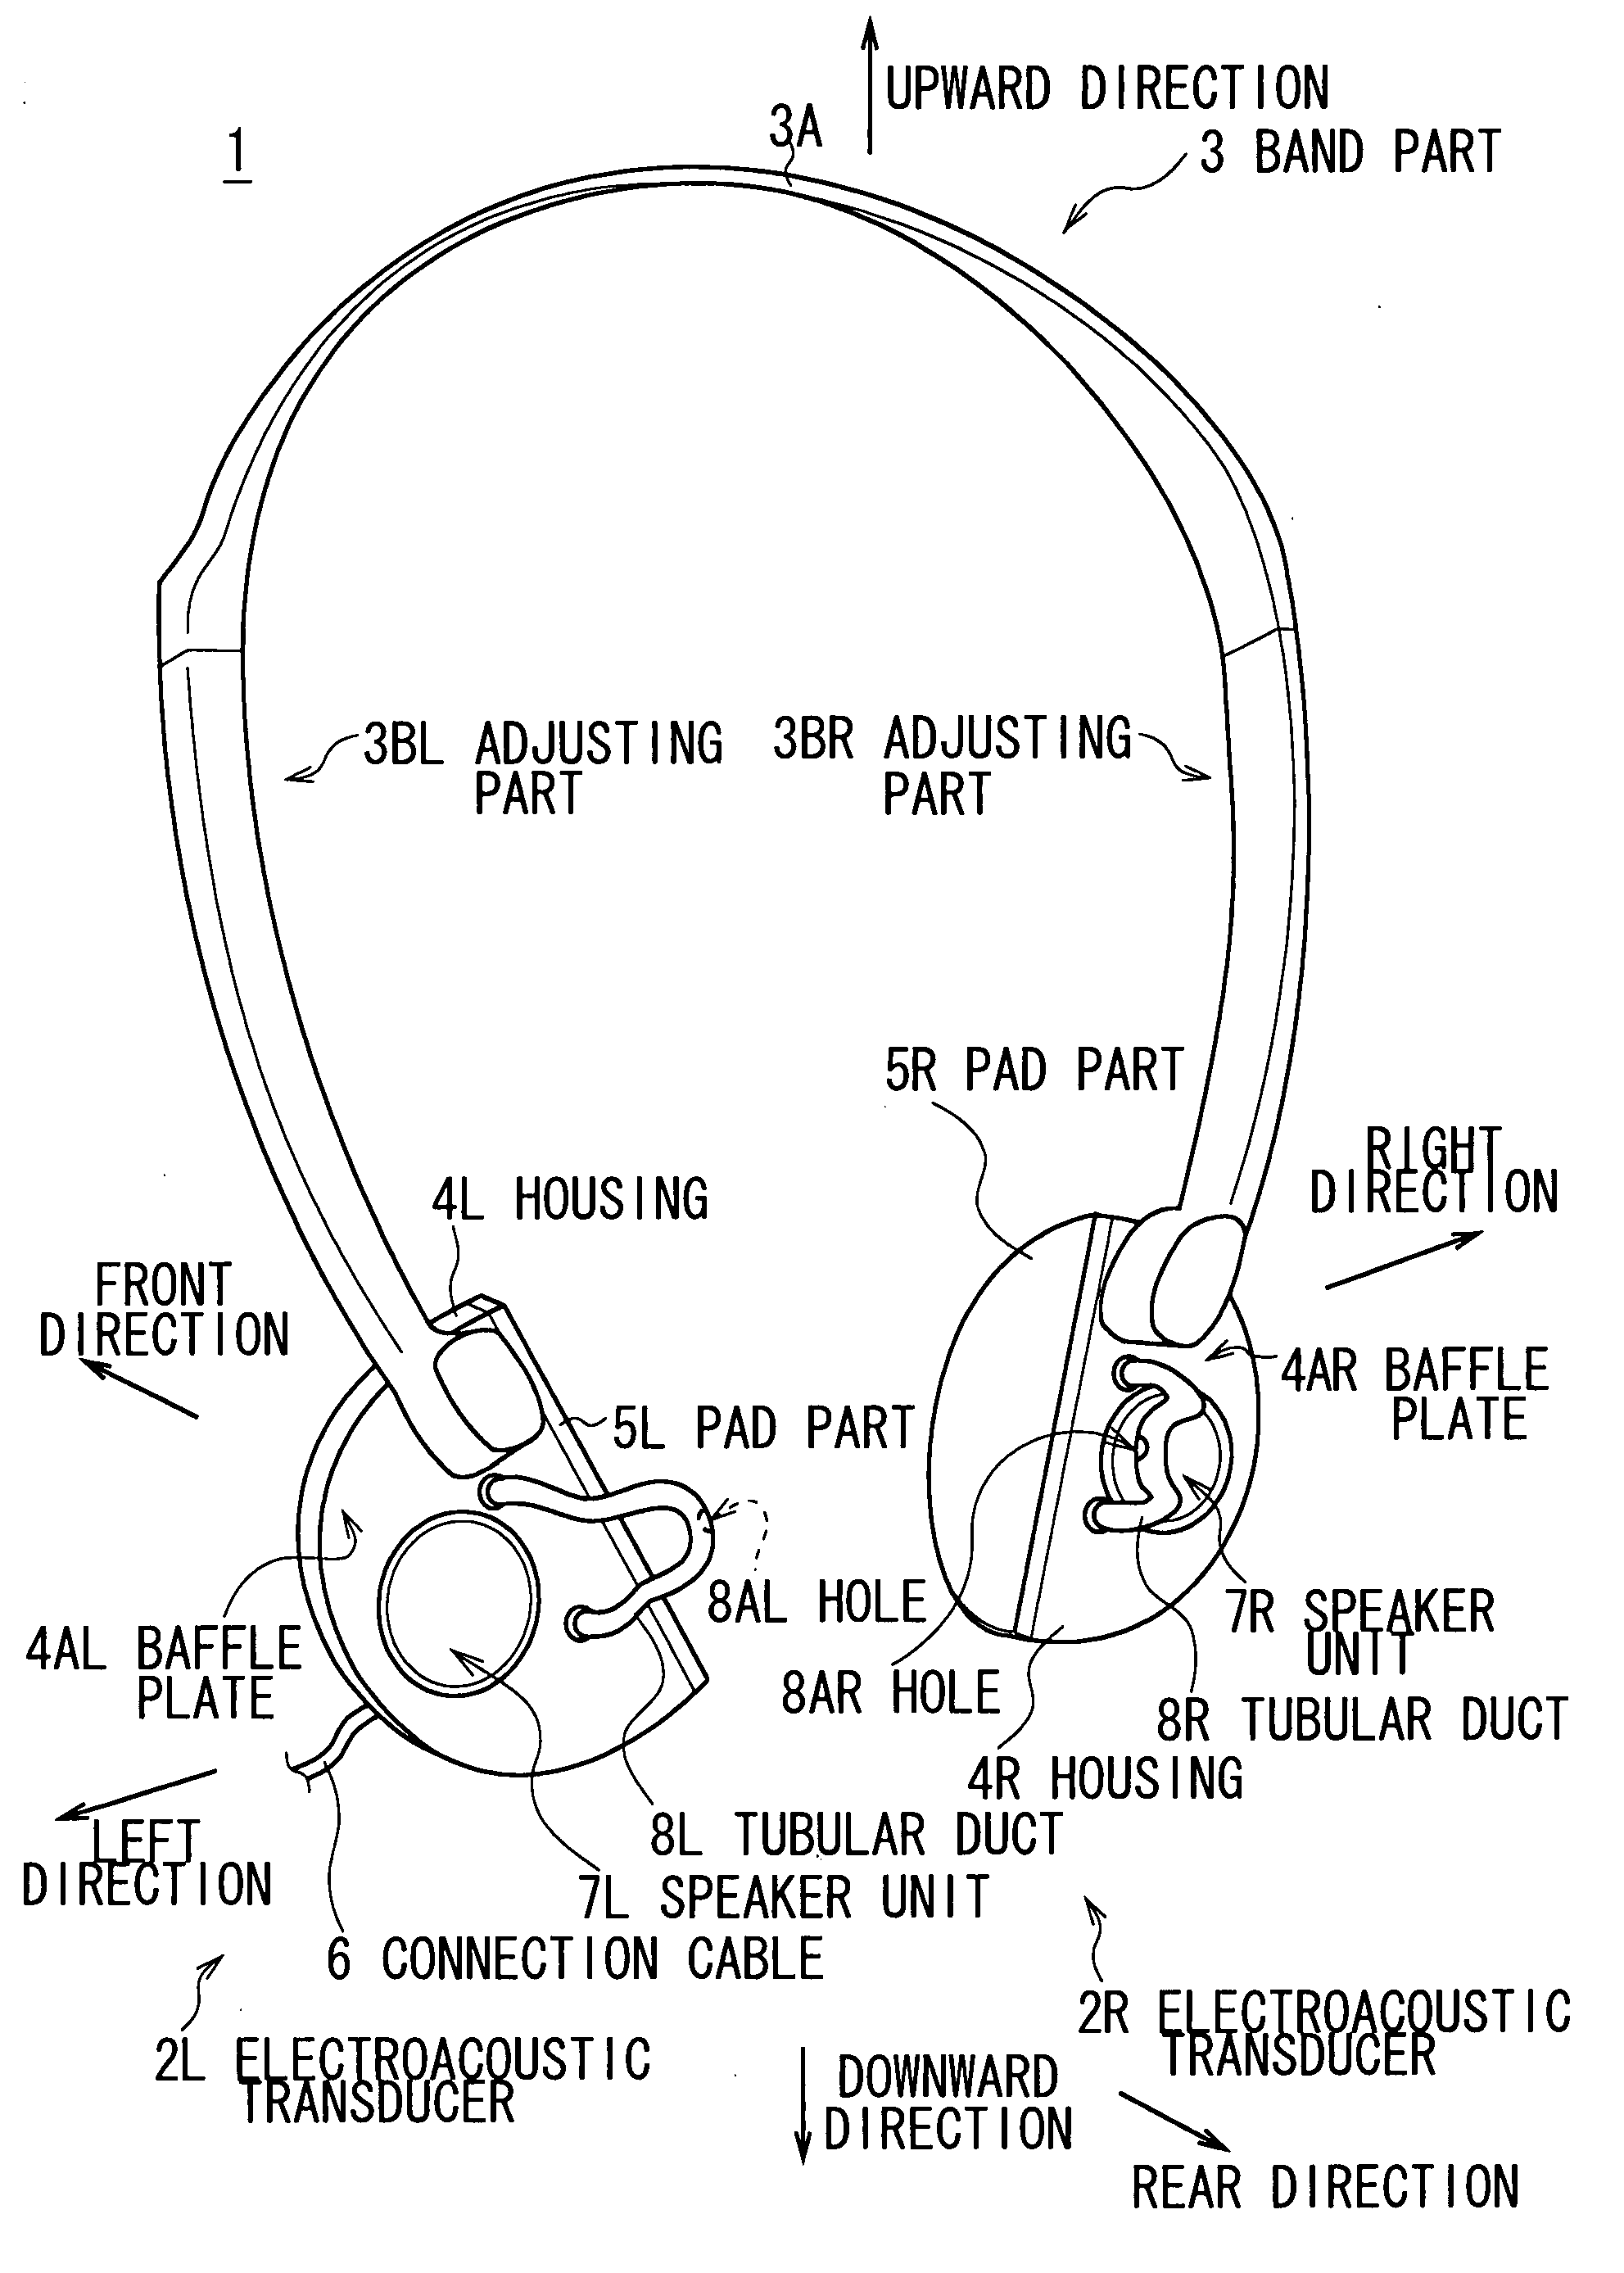 Ear speaker device